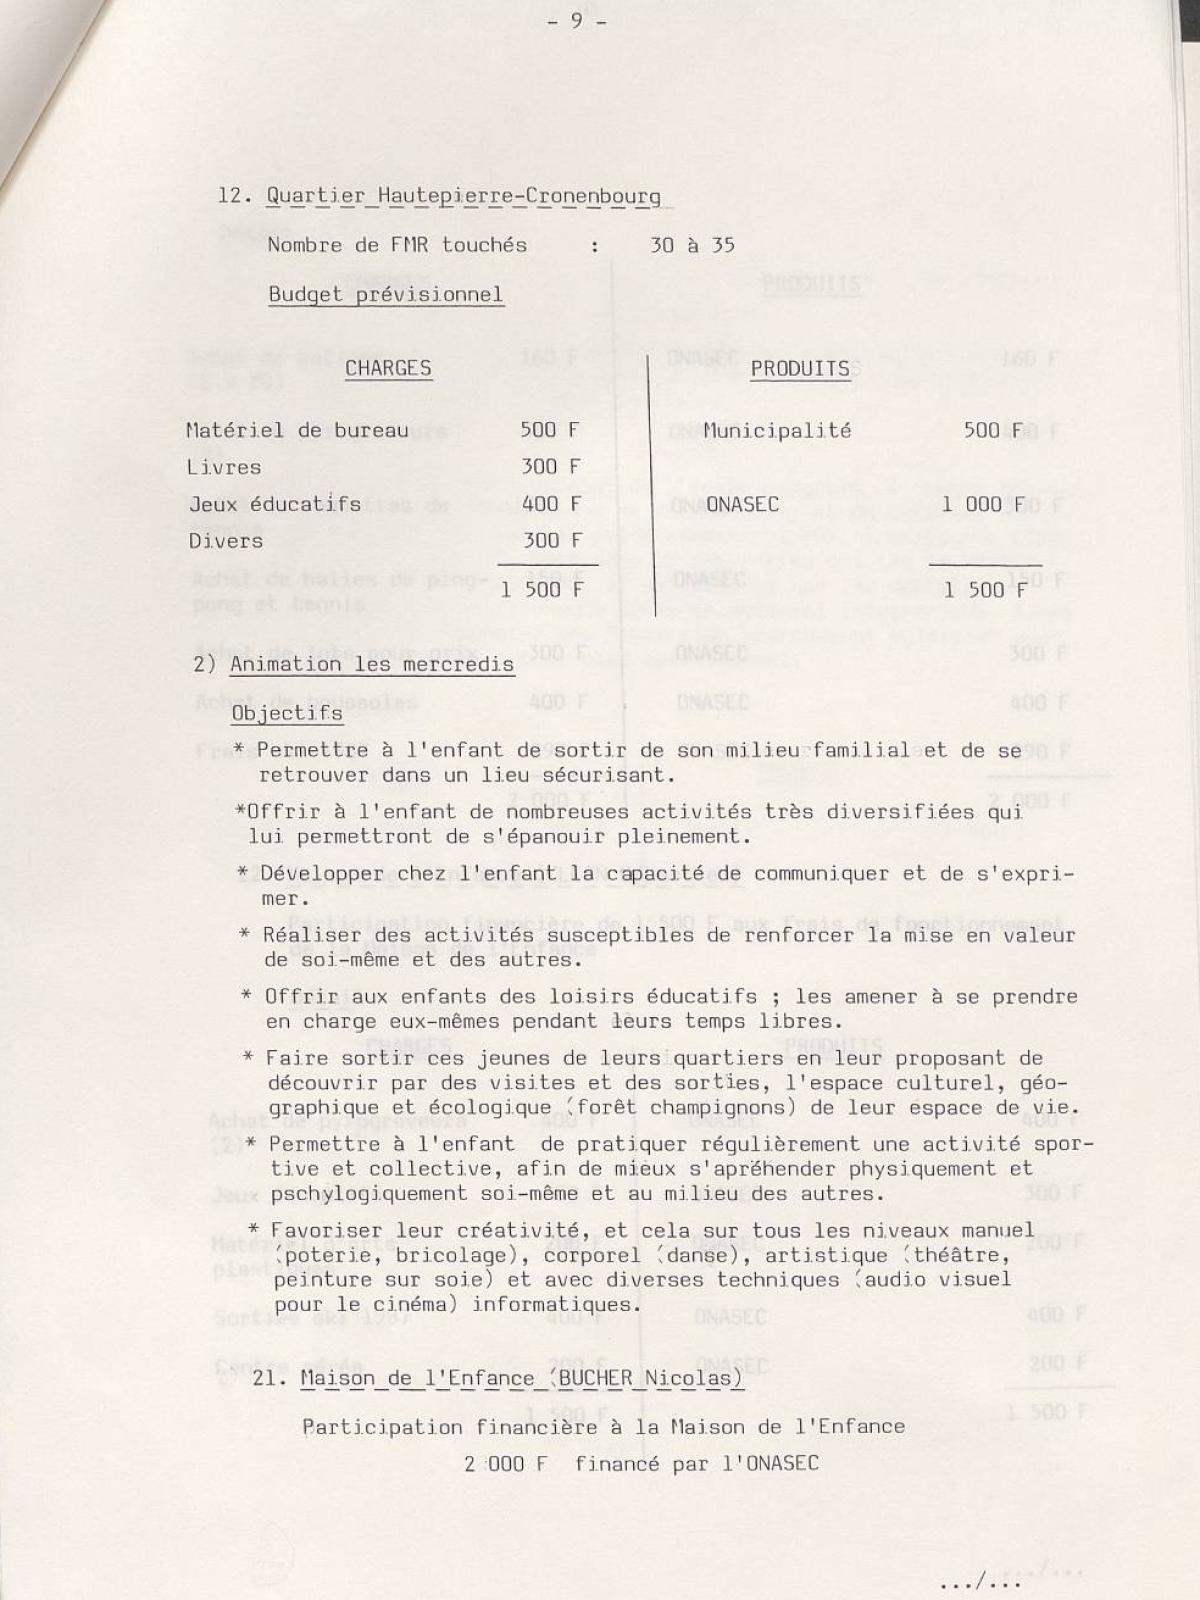 Illustration 9 : Klein Sébastien et Buchet Nicolas, projet pédagogique, décembre 1986 - juillet 1987 (Archives nationales, 19870444/8)